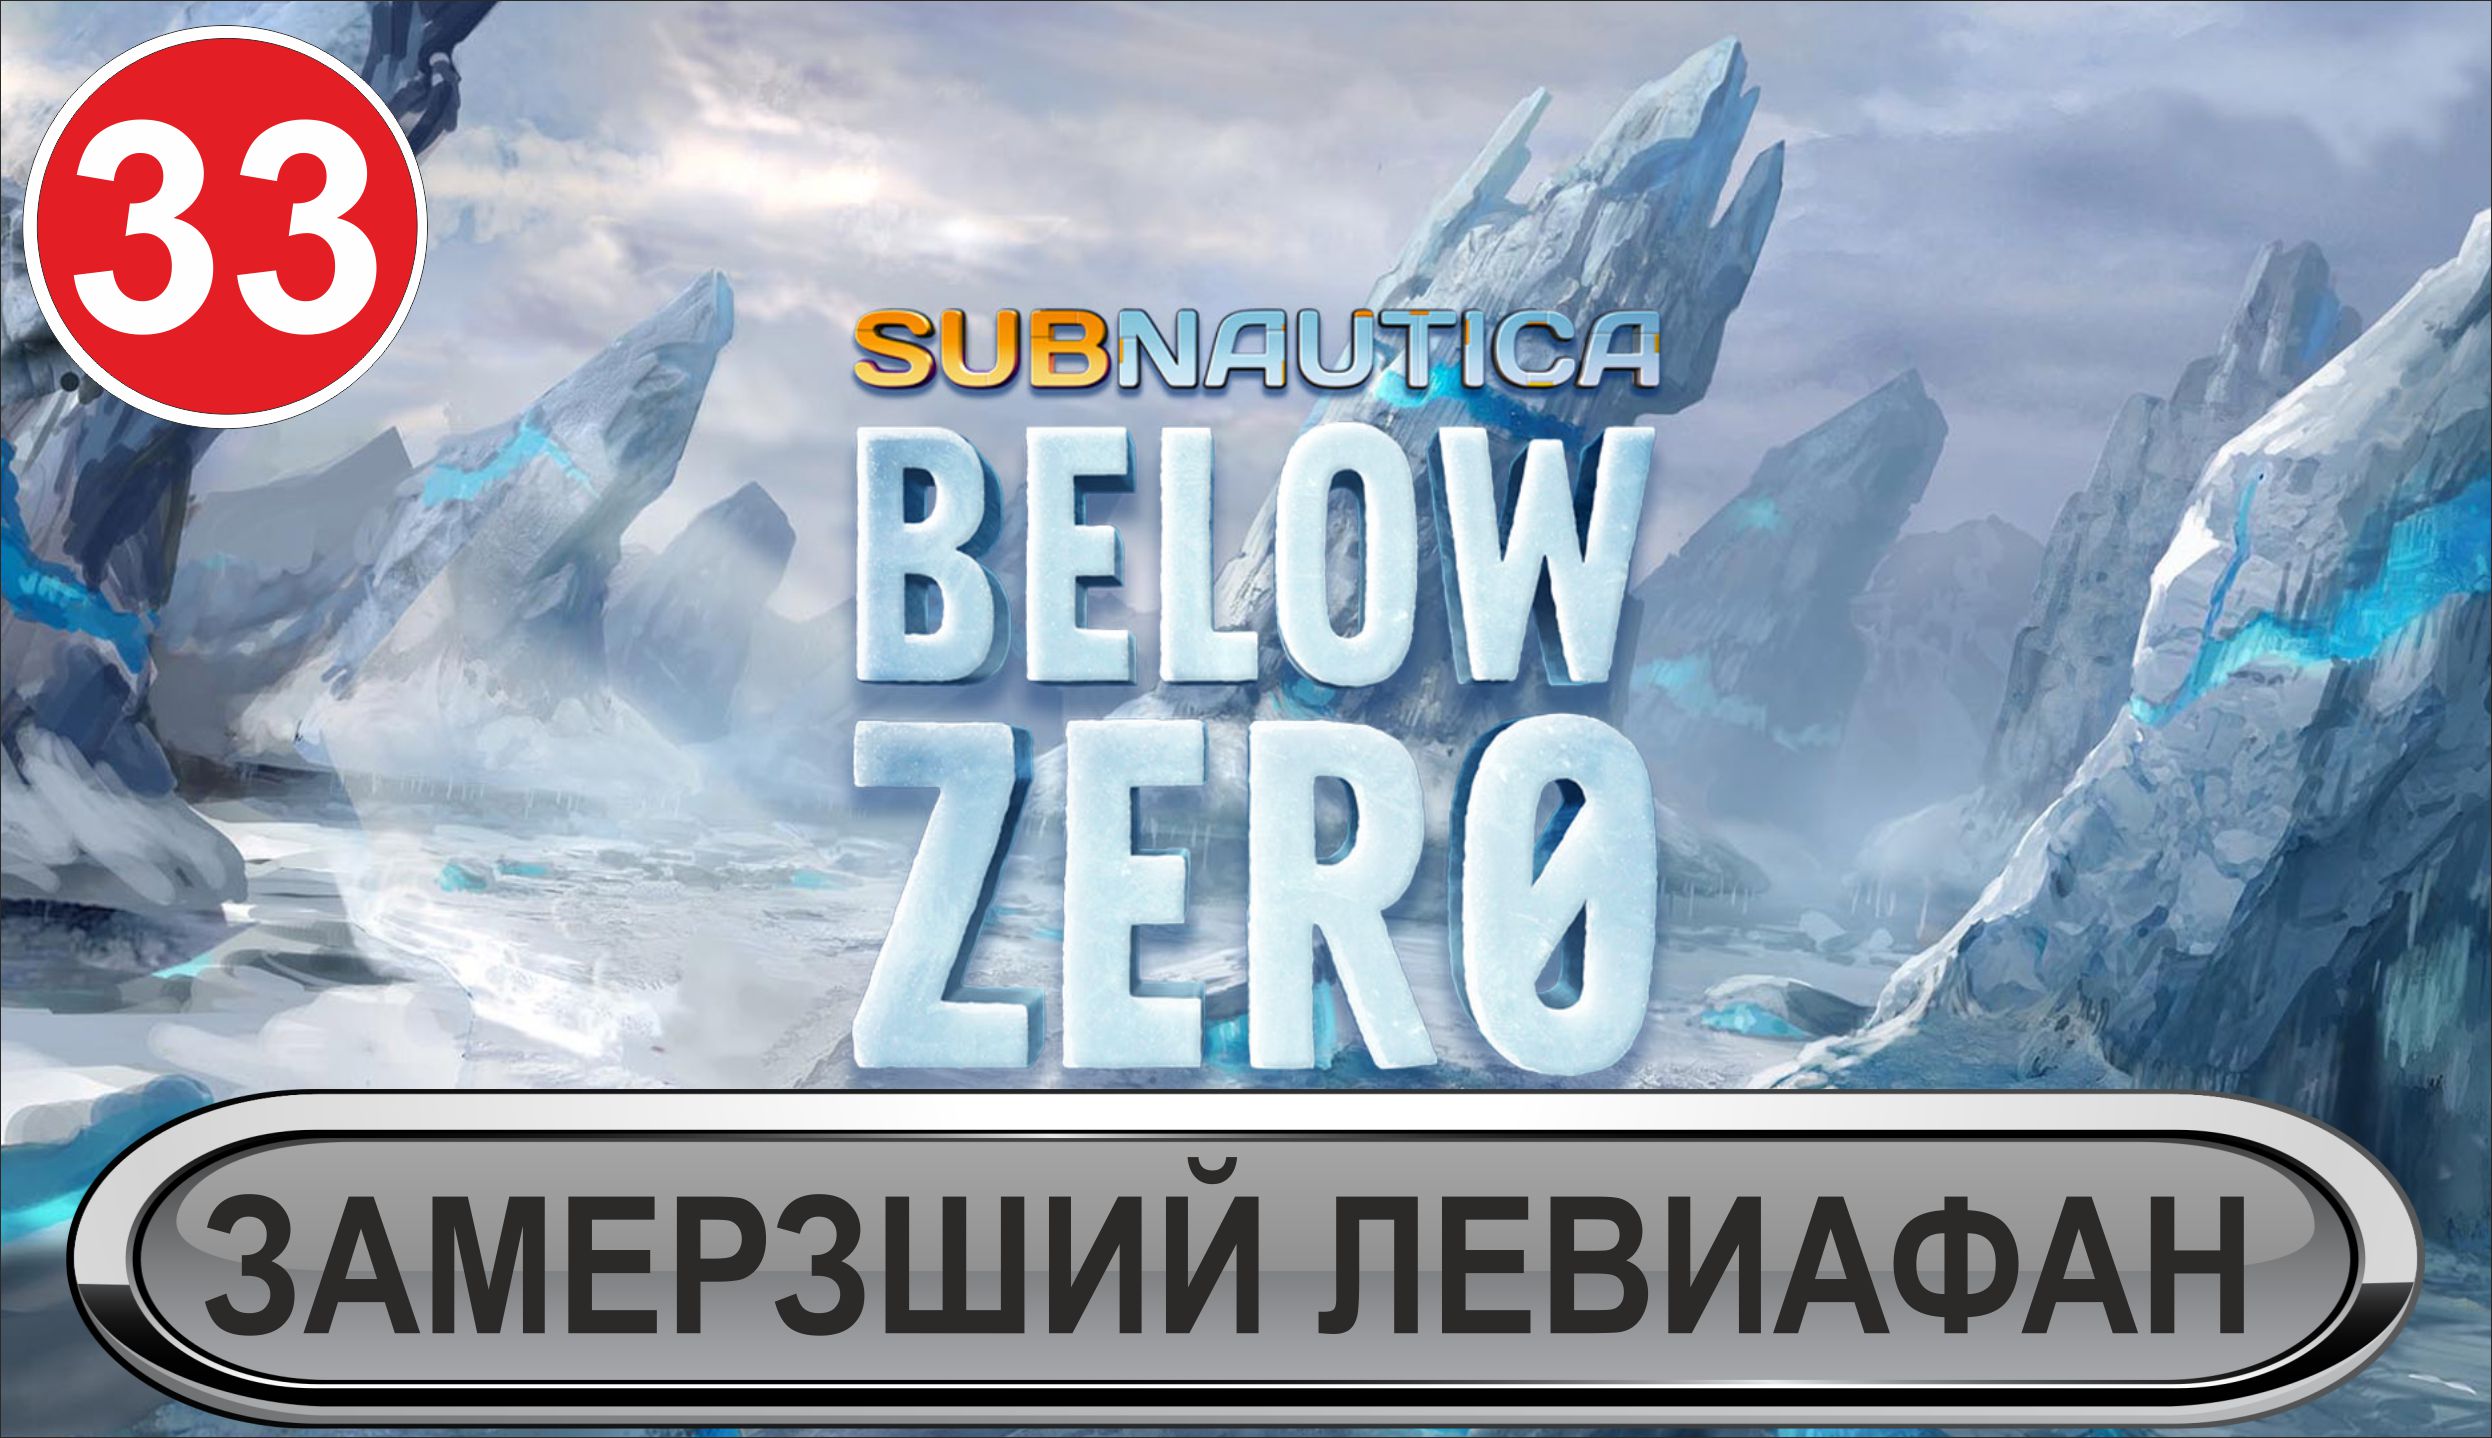 Subnautica: Below Zero - Замерзший левиафан